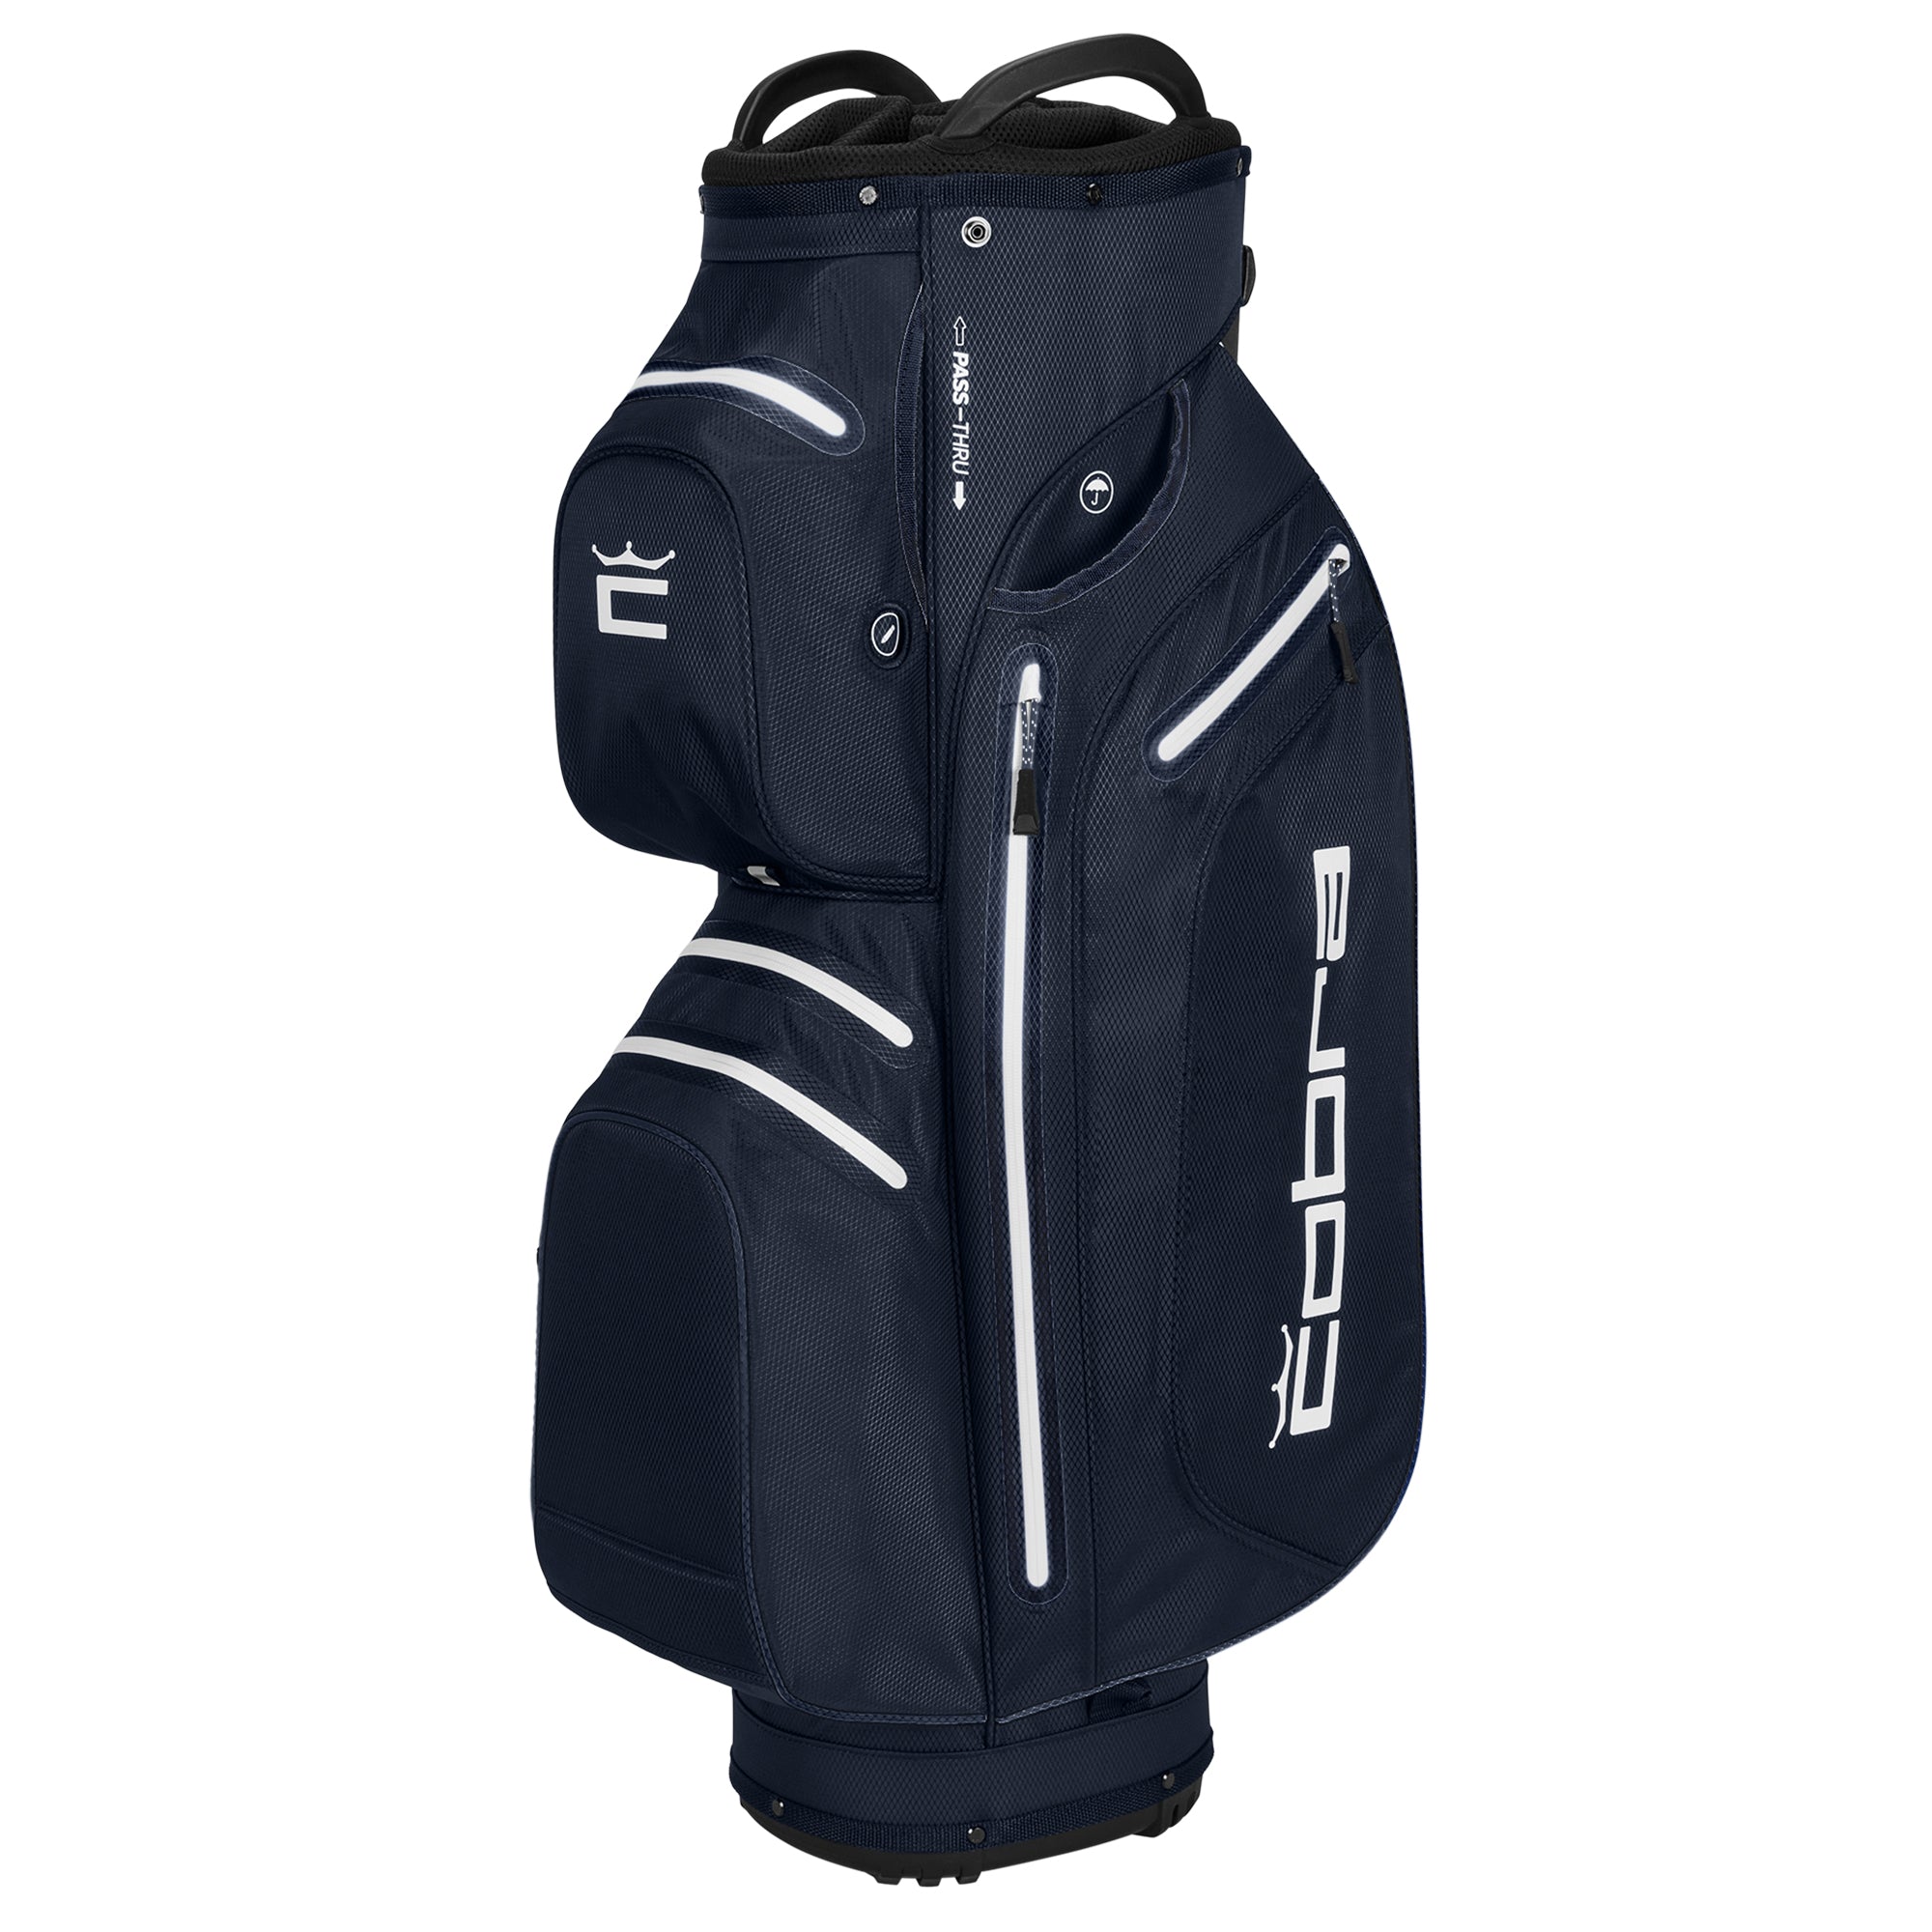 cobra-golf-ultradry-pro-cart-bag-909590-navy-blazer-white-03